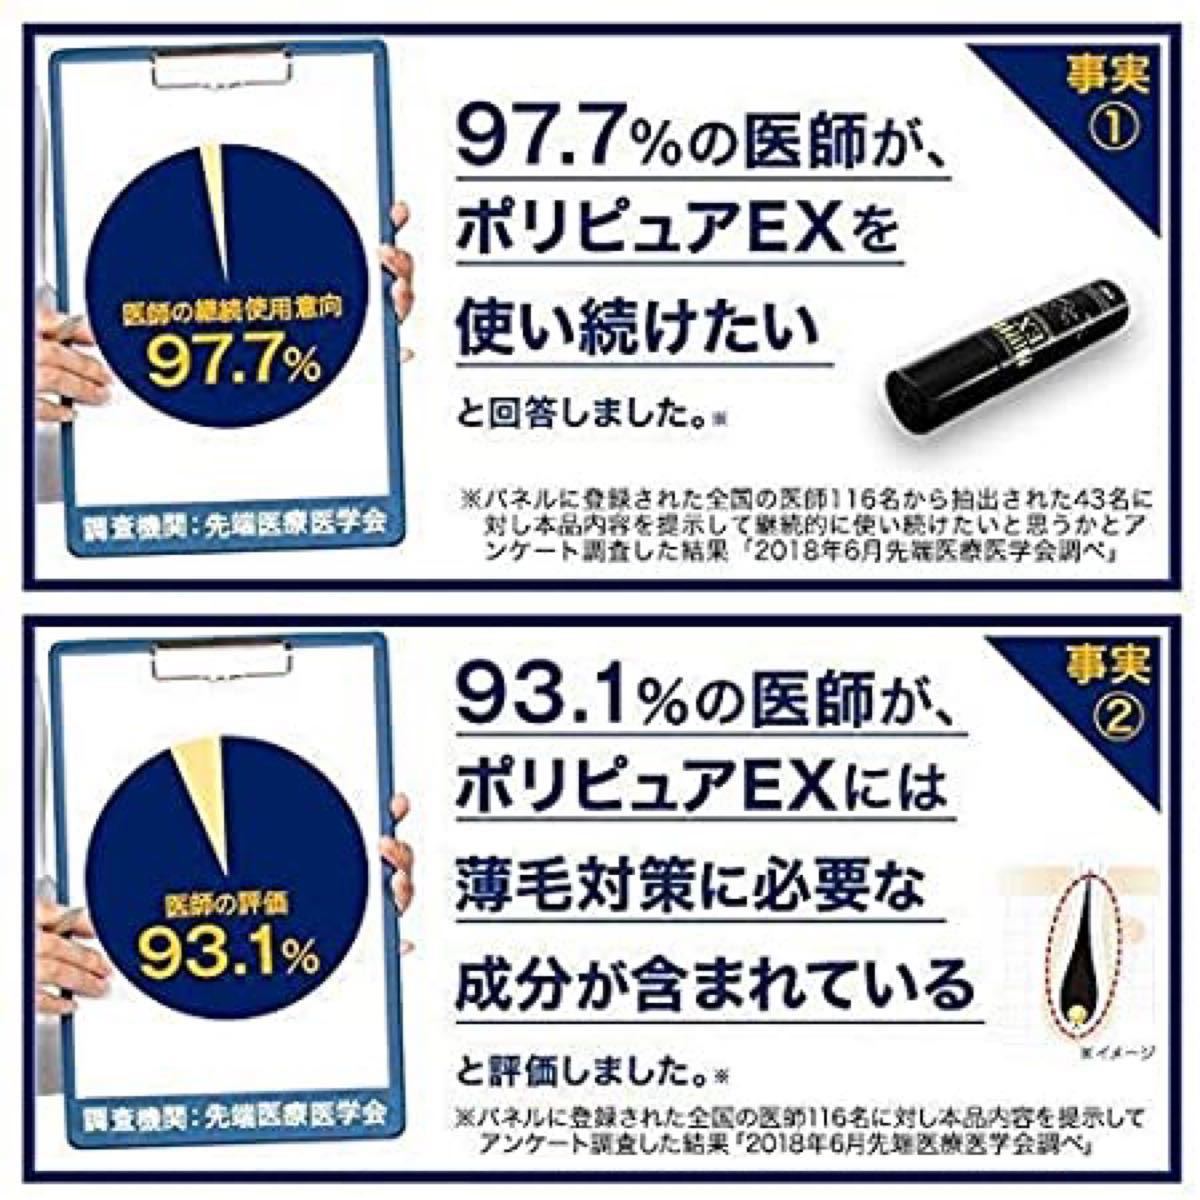 【新品】育毛 薬用ポリピュアEX シャンプー、育毛剤 セット